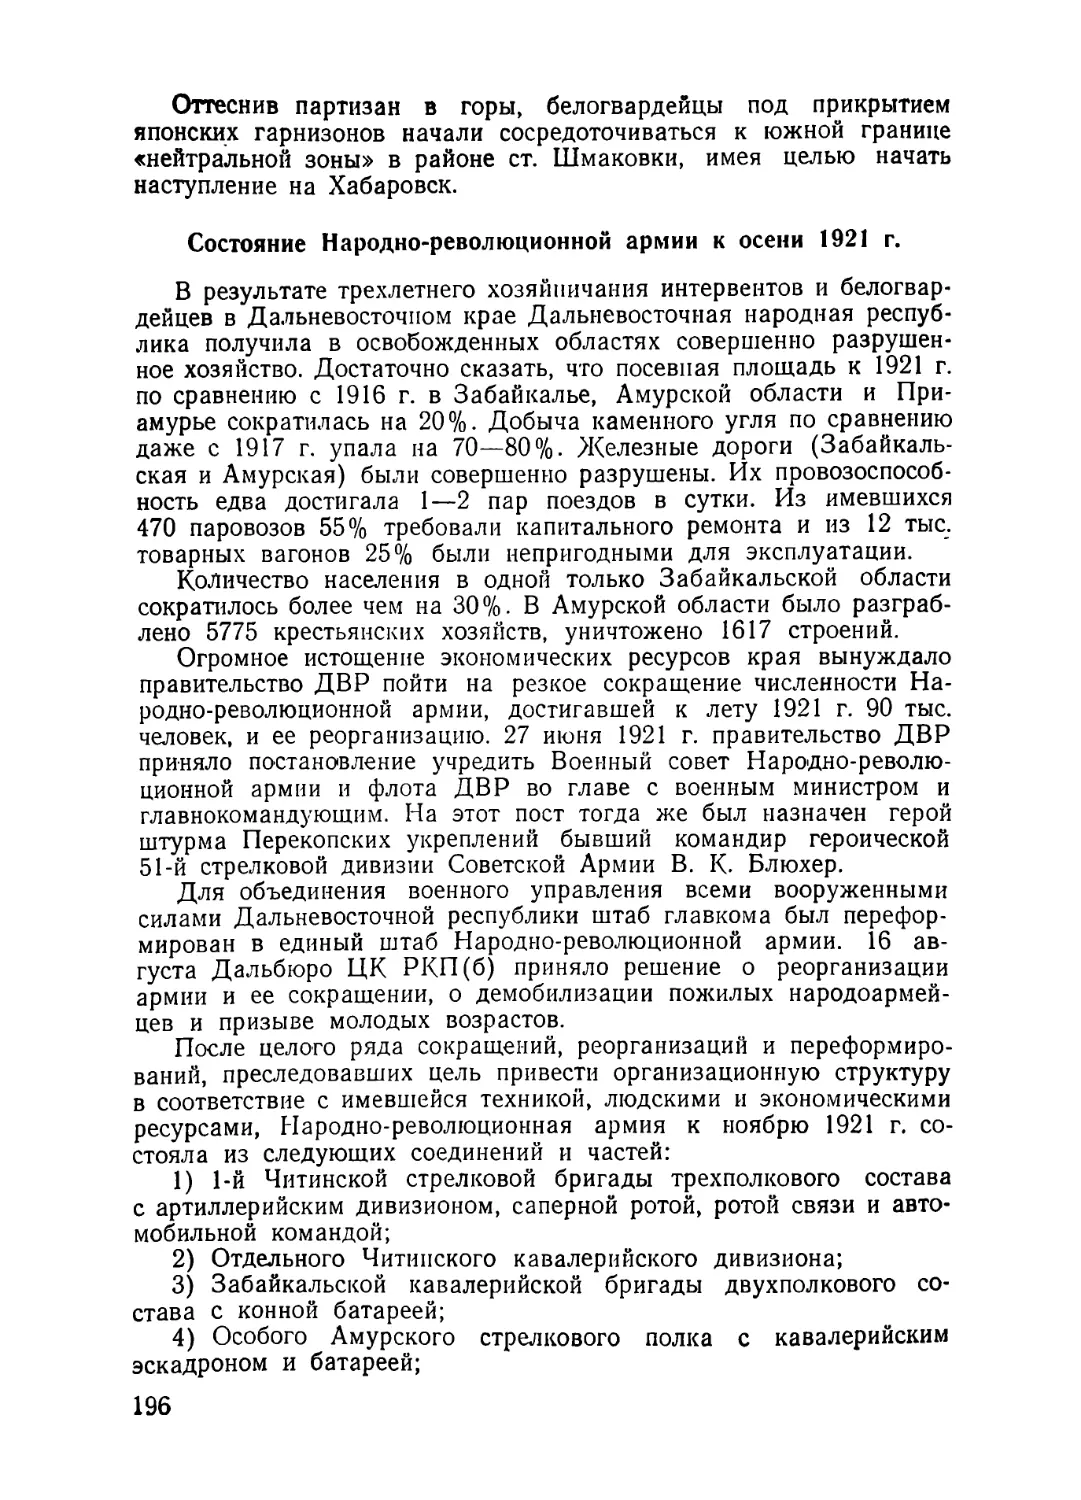 Состояние Народно-революционной армии к осени 1921 г.